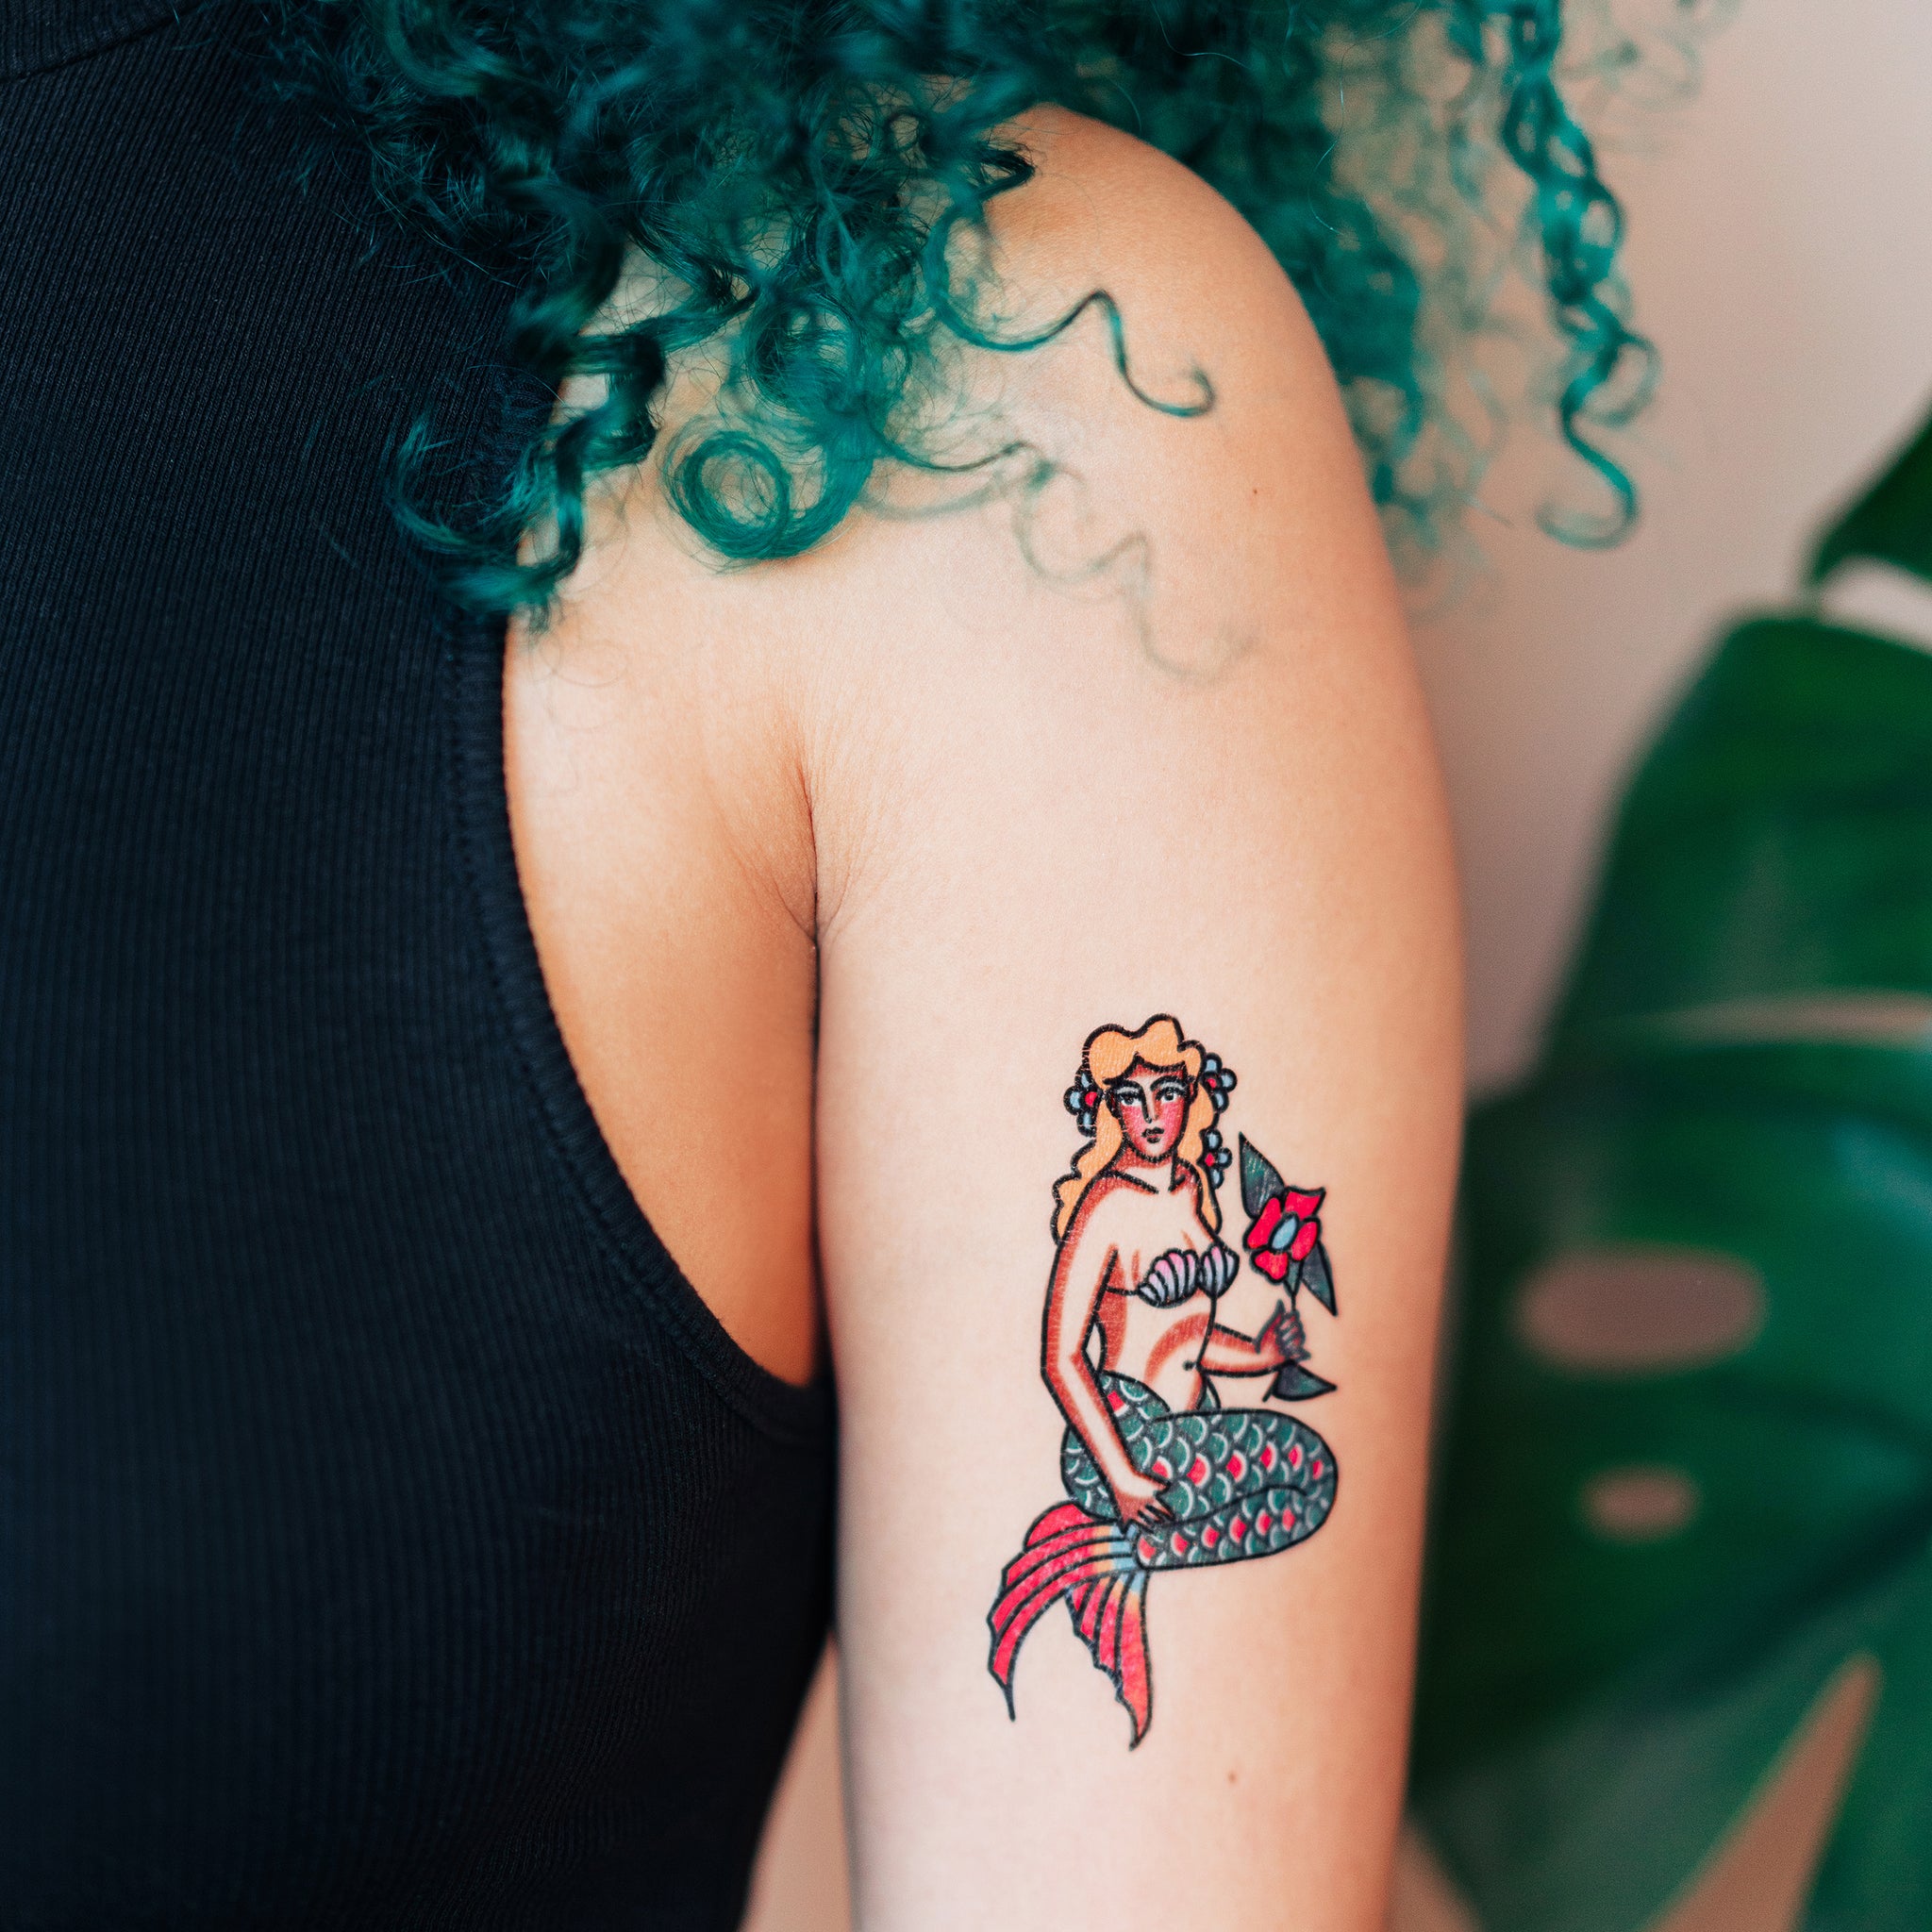 Galaxy Mermaid by Matt Simmons at Underworld Tattoo in Salem, NH : r/tattoos